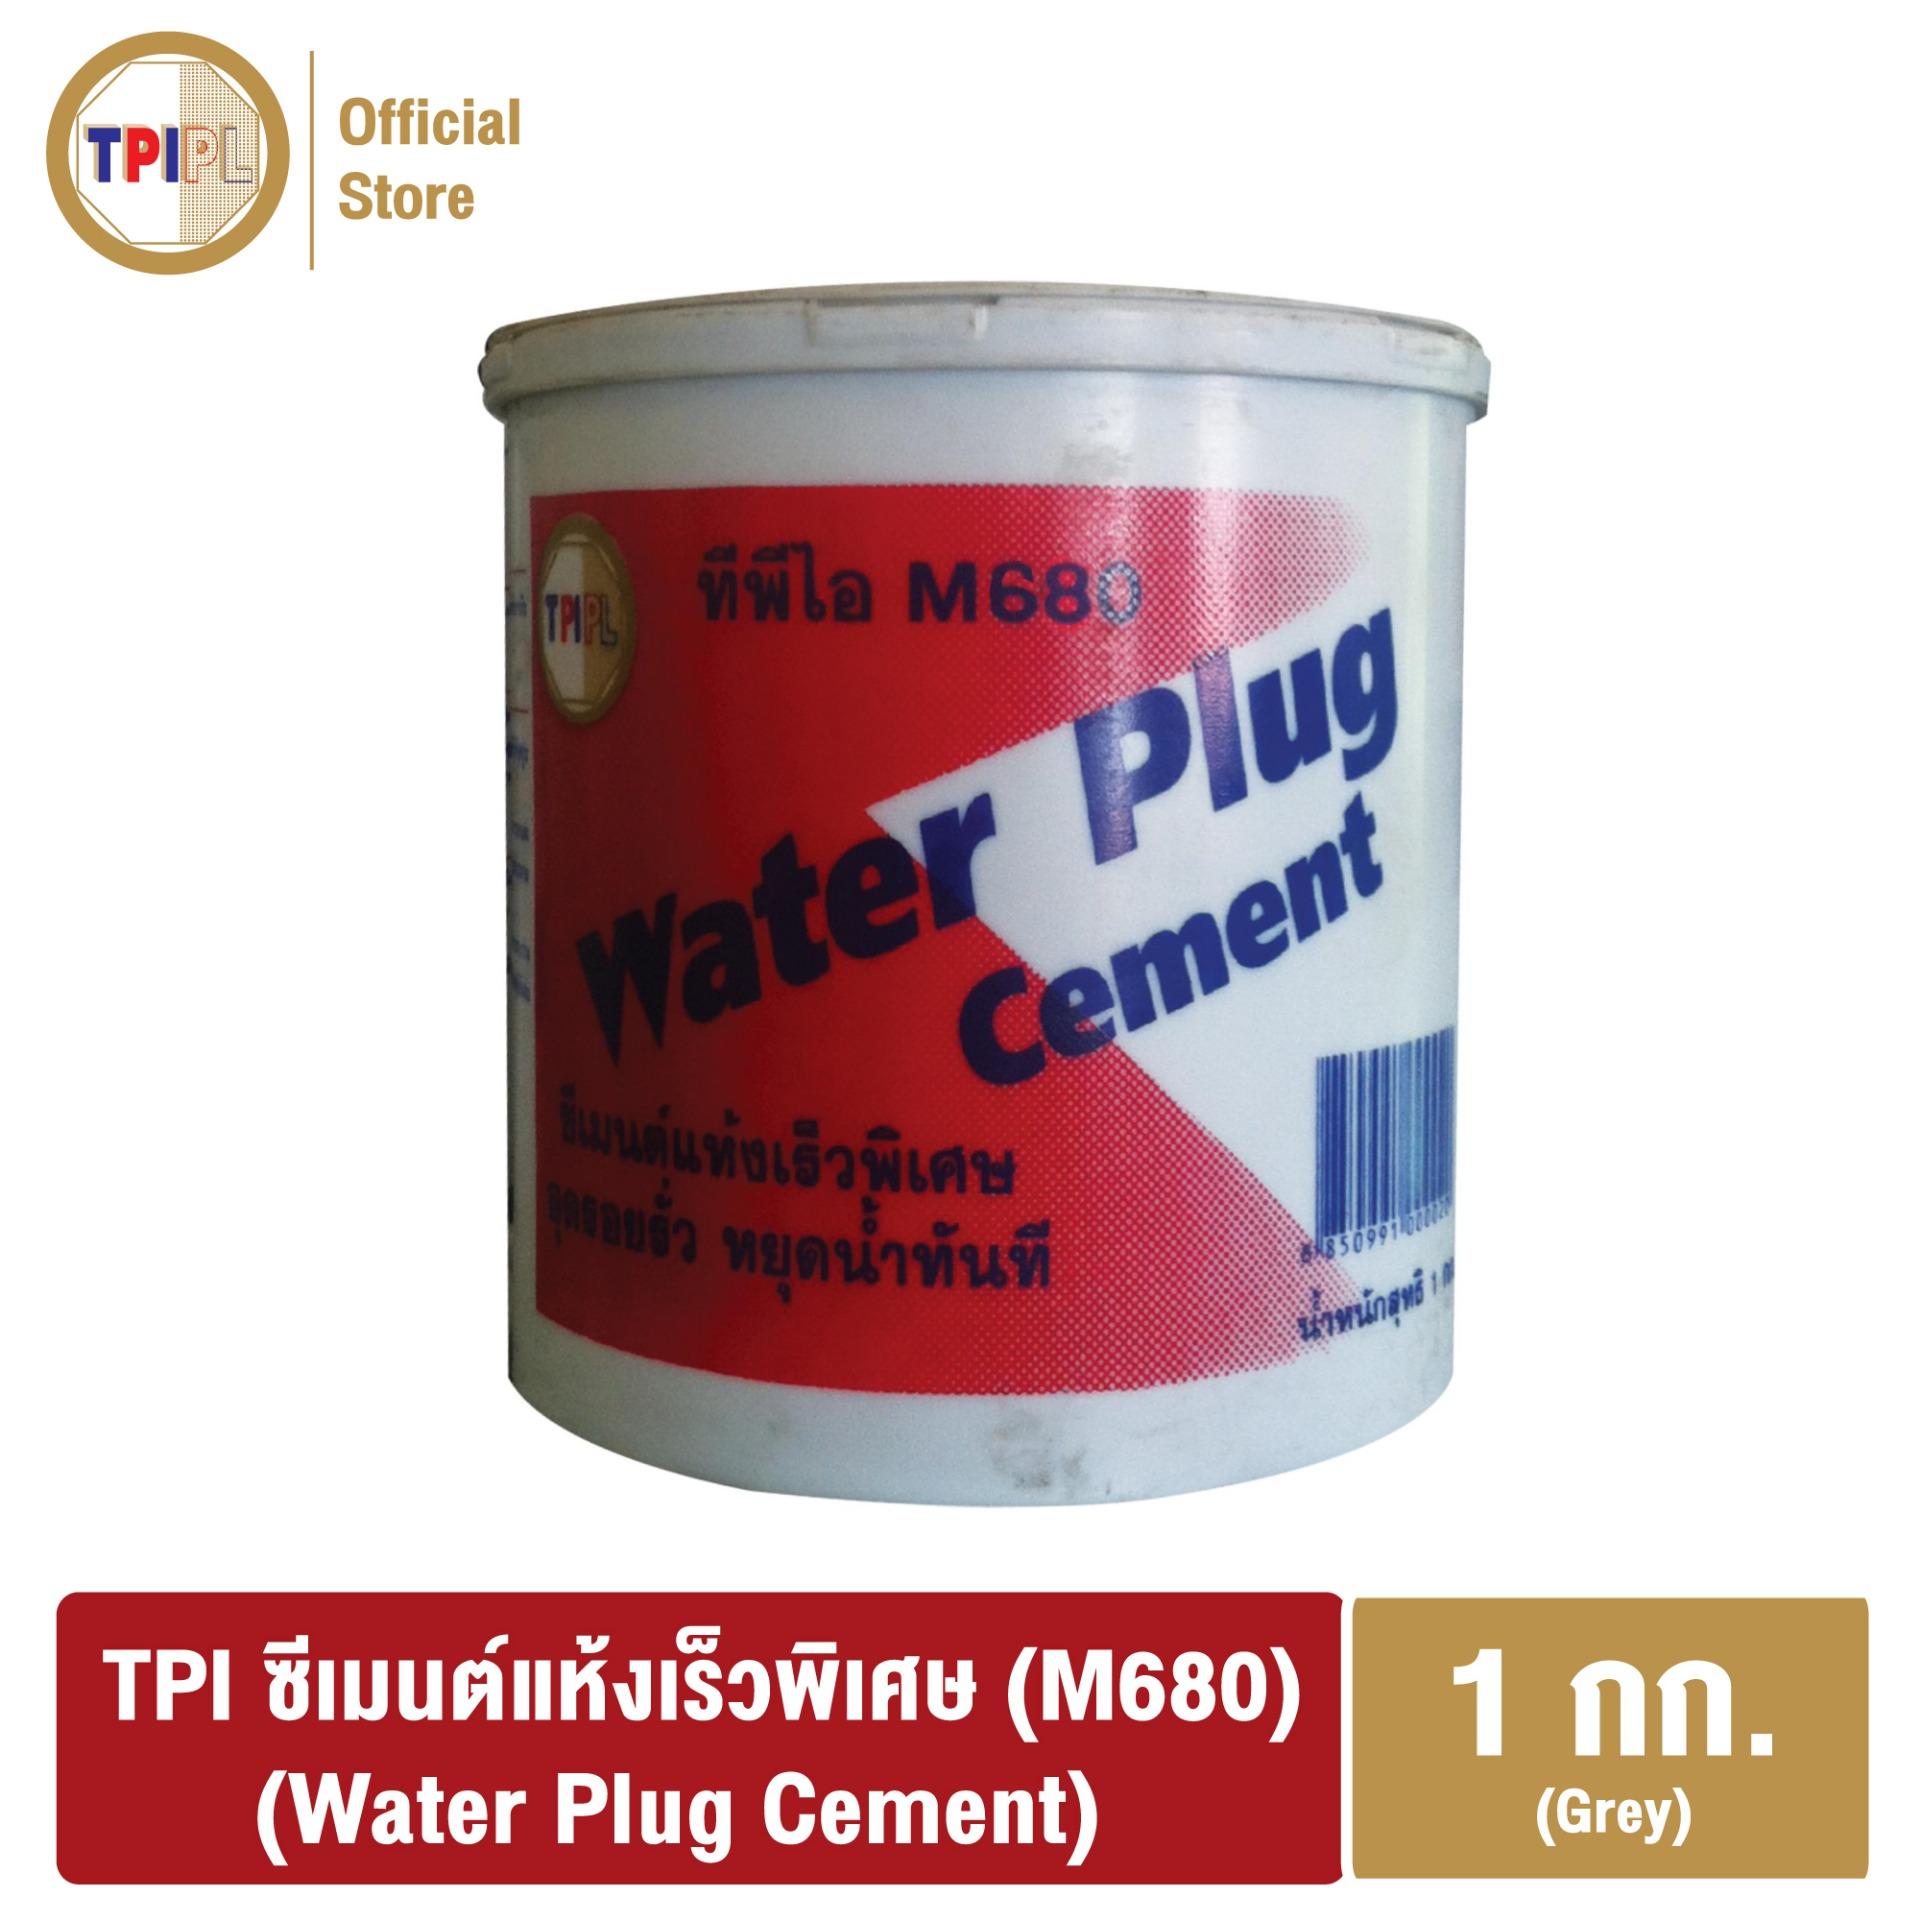 ซีเมนต์แห้งเร็วพิเศษ ทีพีไอ (M680) (Water Plug Cement) ขนาด 1 กก.